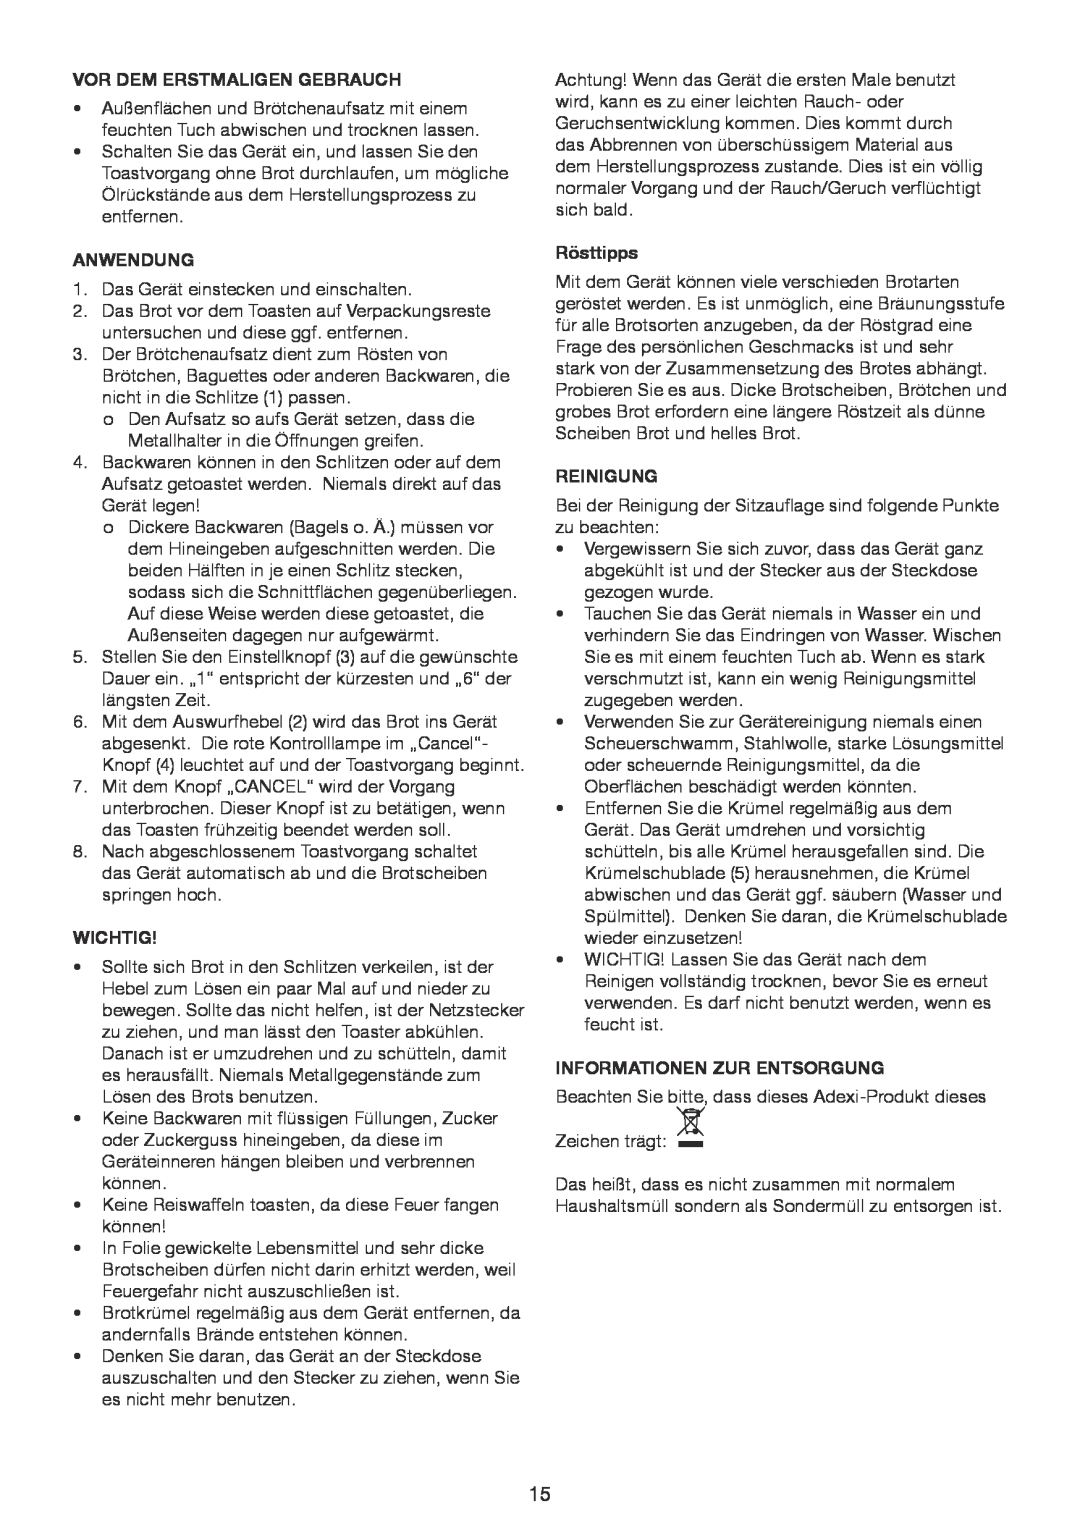 Melissa 643-200 manual Vor Dem Erstmaligen Gebrauch, Anwendung, Wichtig, Rösttipps, Reinigung, Informationen Zur Entsorgung 